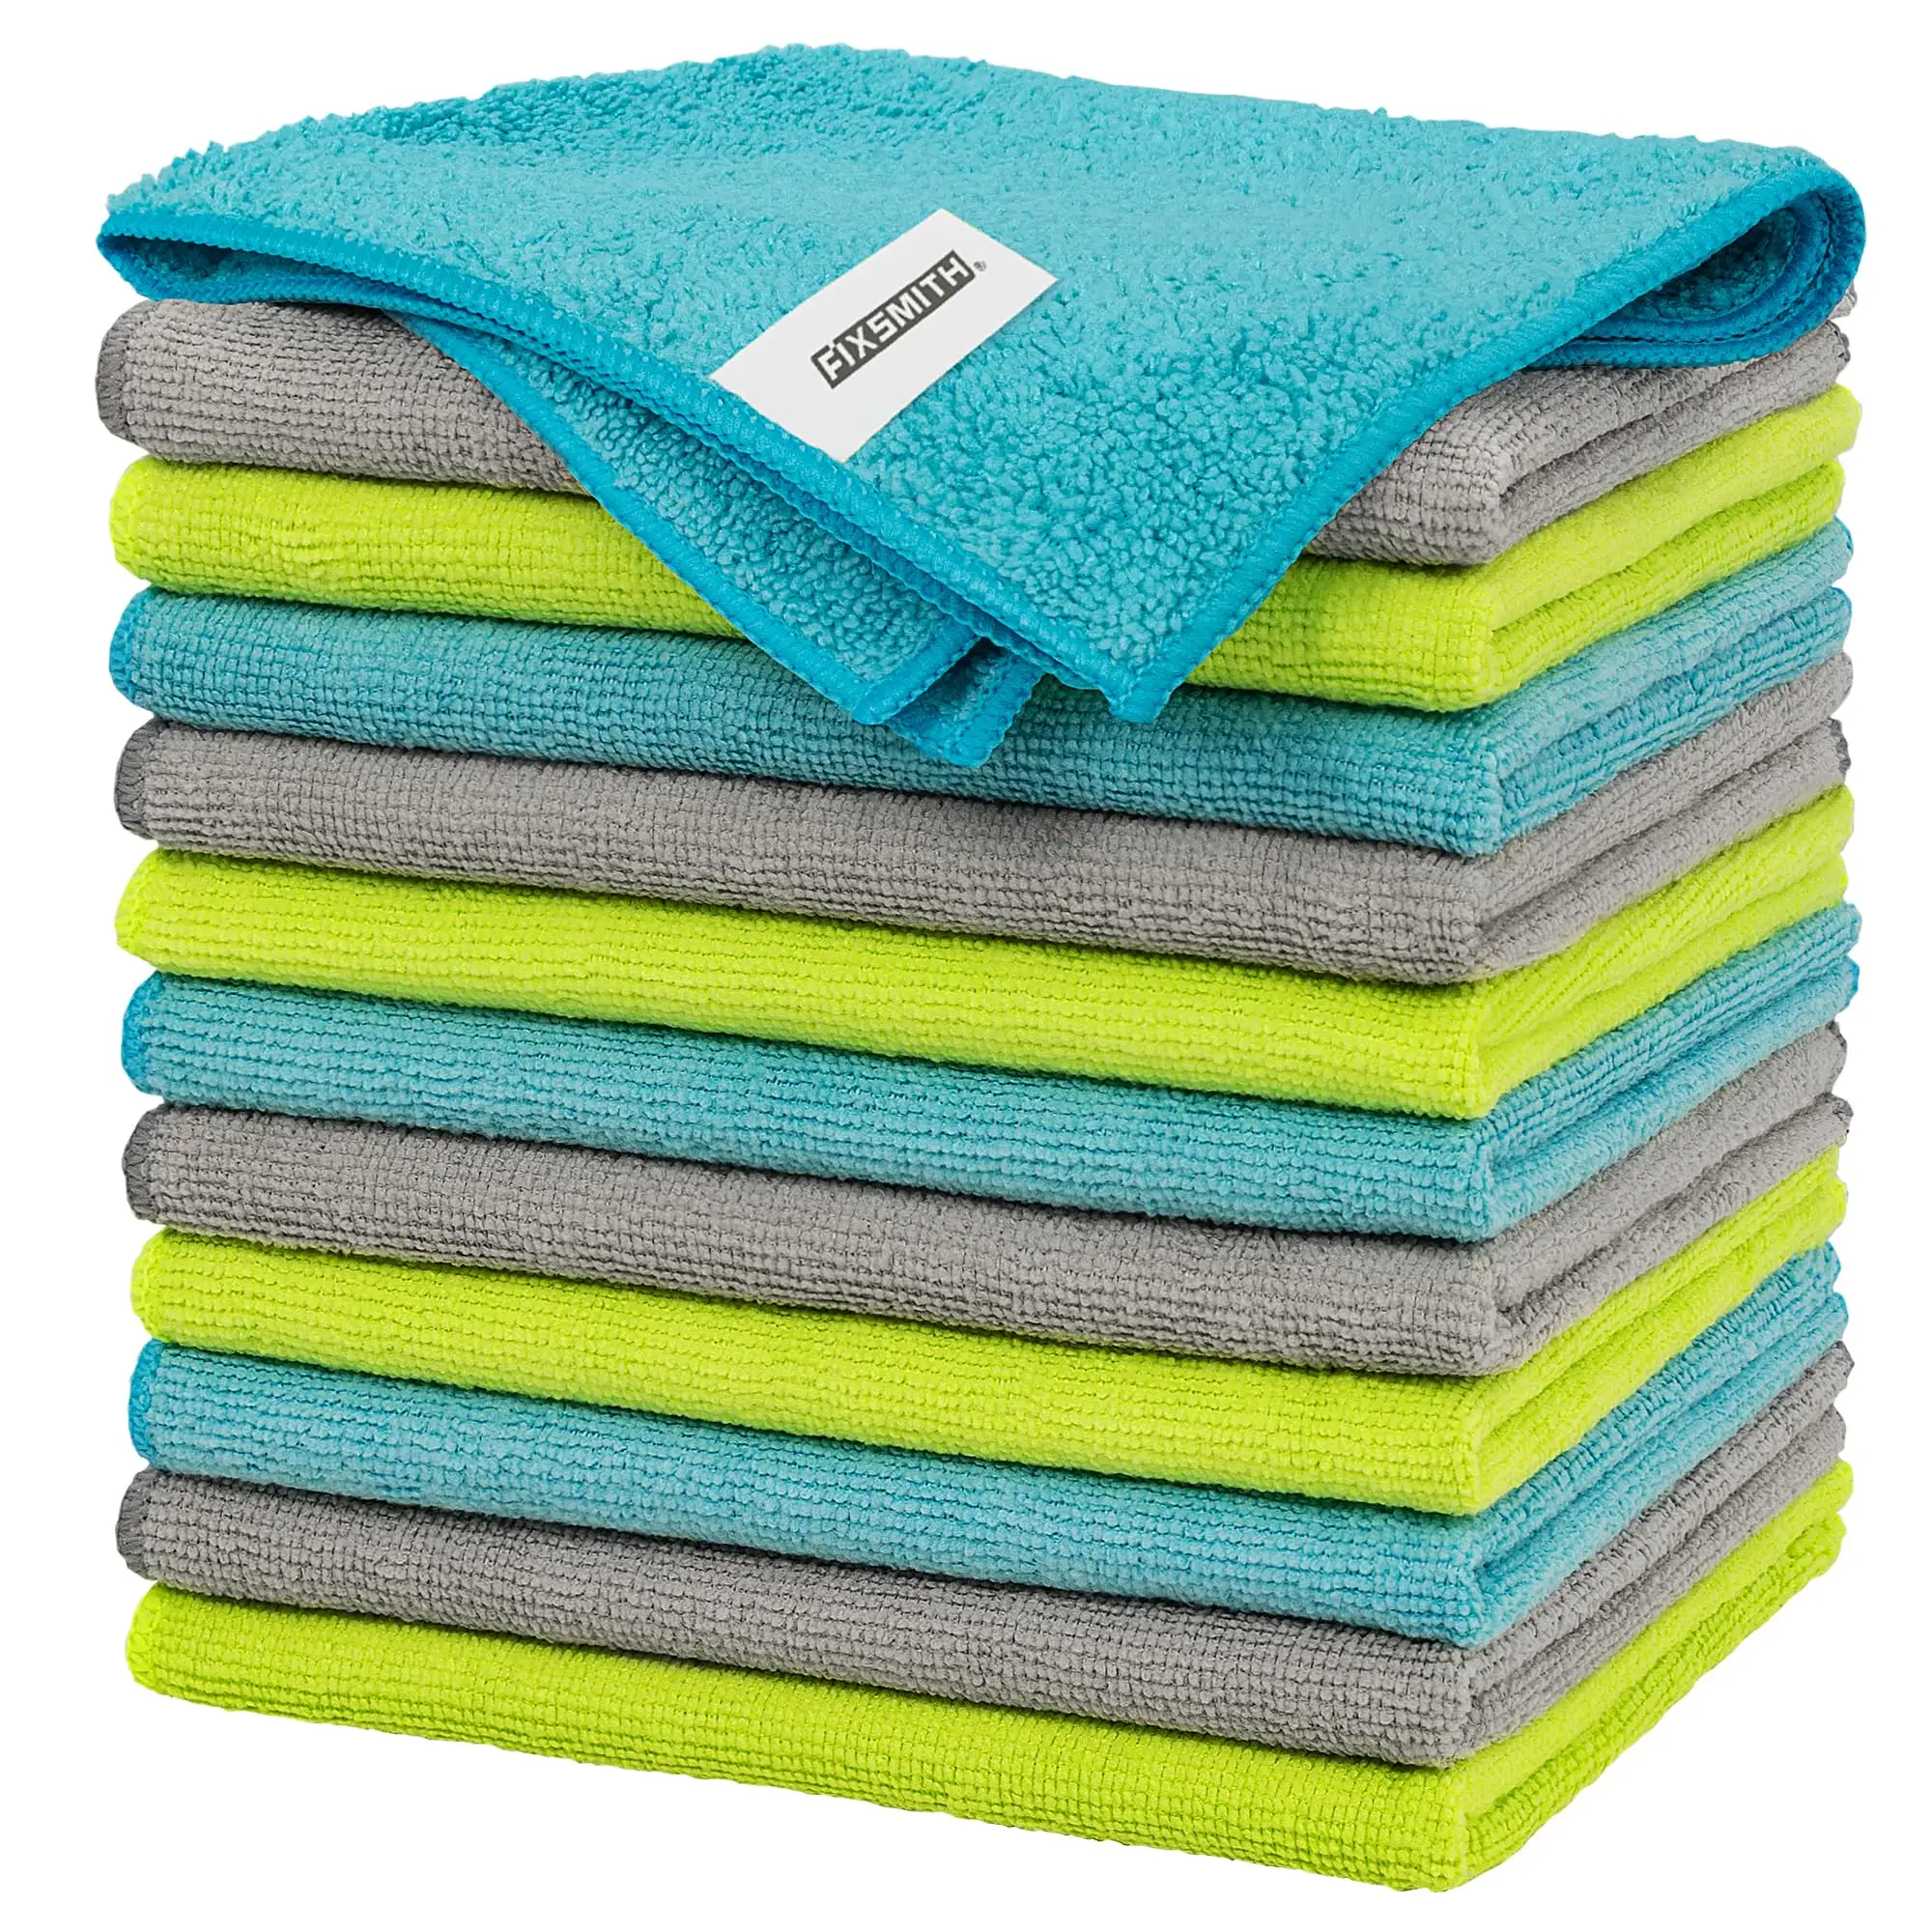 Многофункциональные полотенца 12*12 дюймов, с высокой впитывающей способностью, тряпки без ворса, безполосные салфетки для автомобиля, кухни, дома, офиса